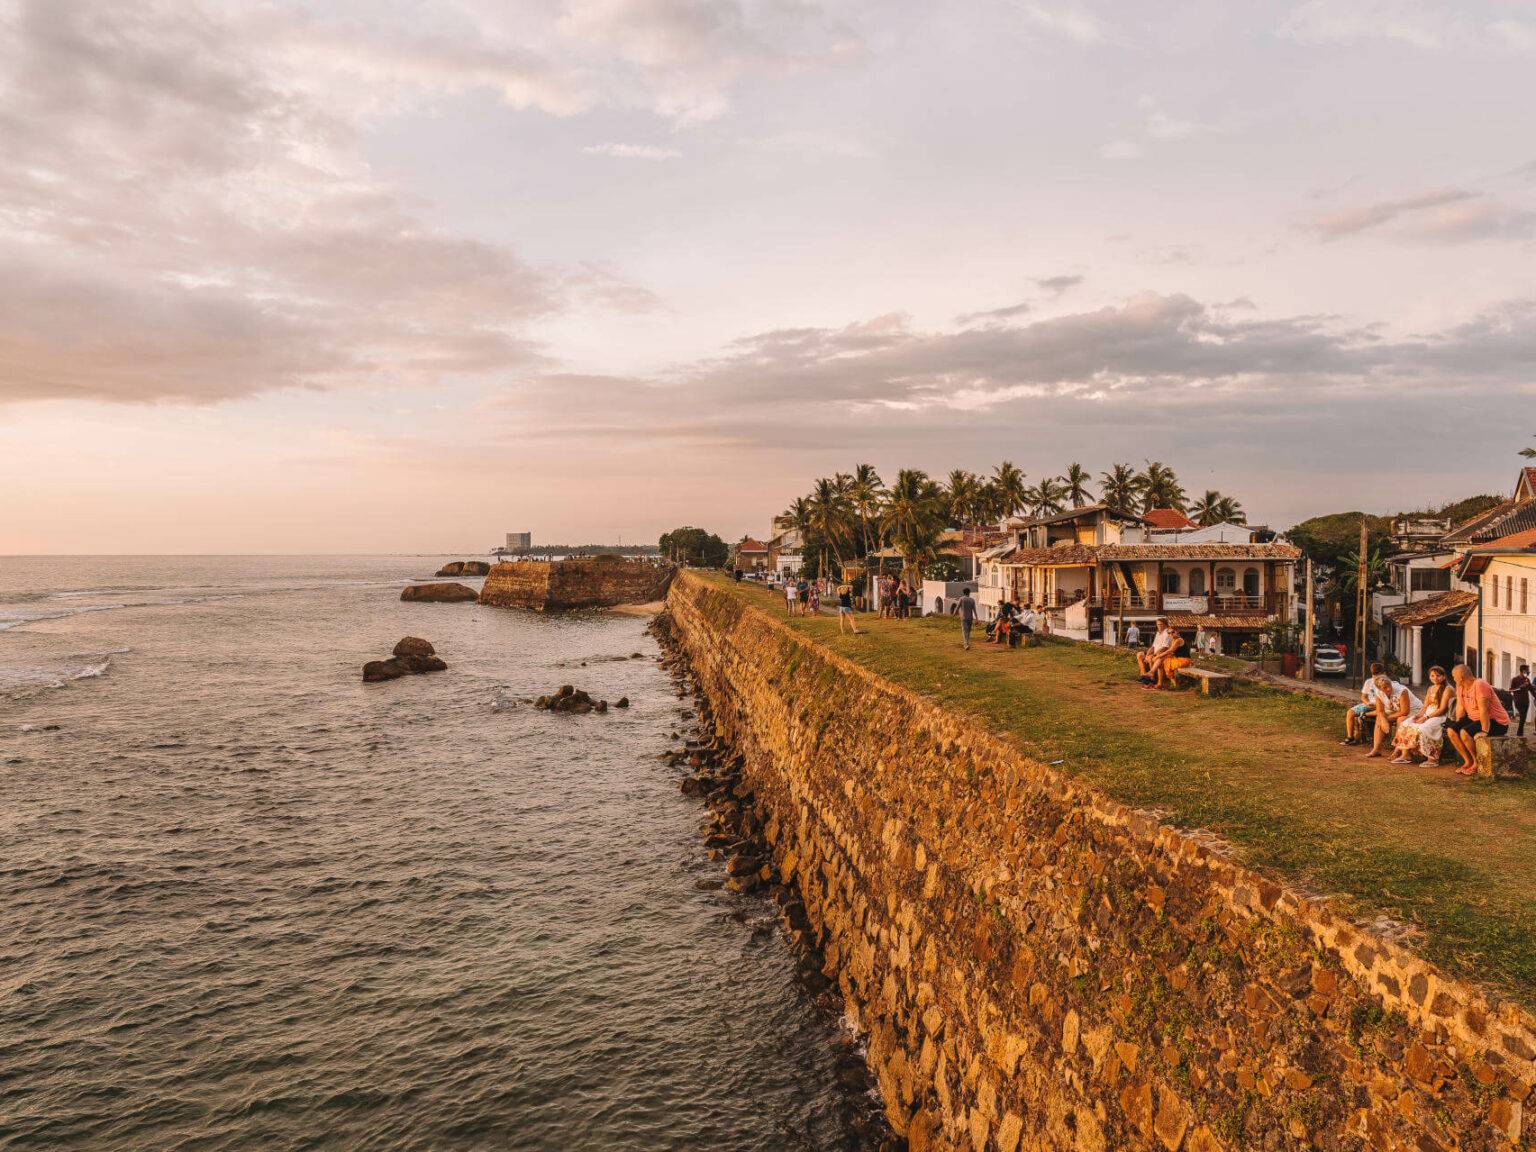 Der Geheimtipp für wunderschöne Reisefotos aus Sri Lanka: Zum Sonnenuntergang auf die Mauer das Dutch Fort.